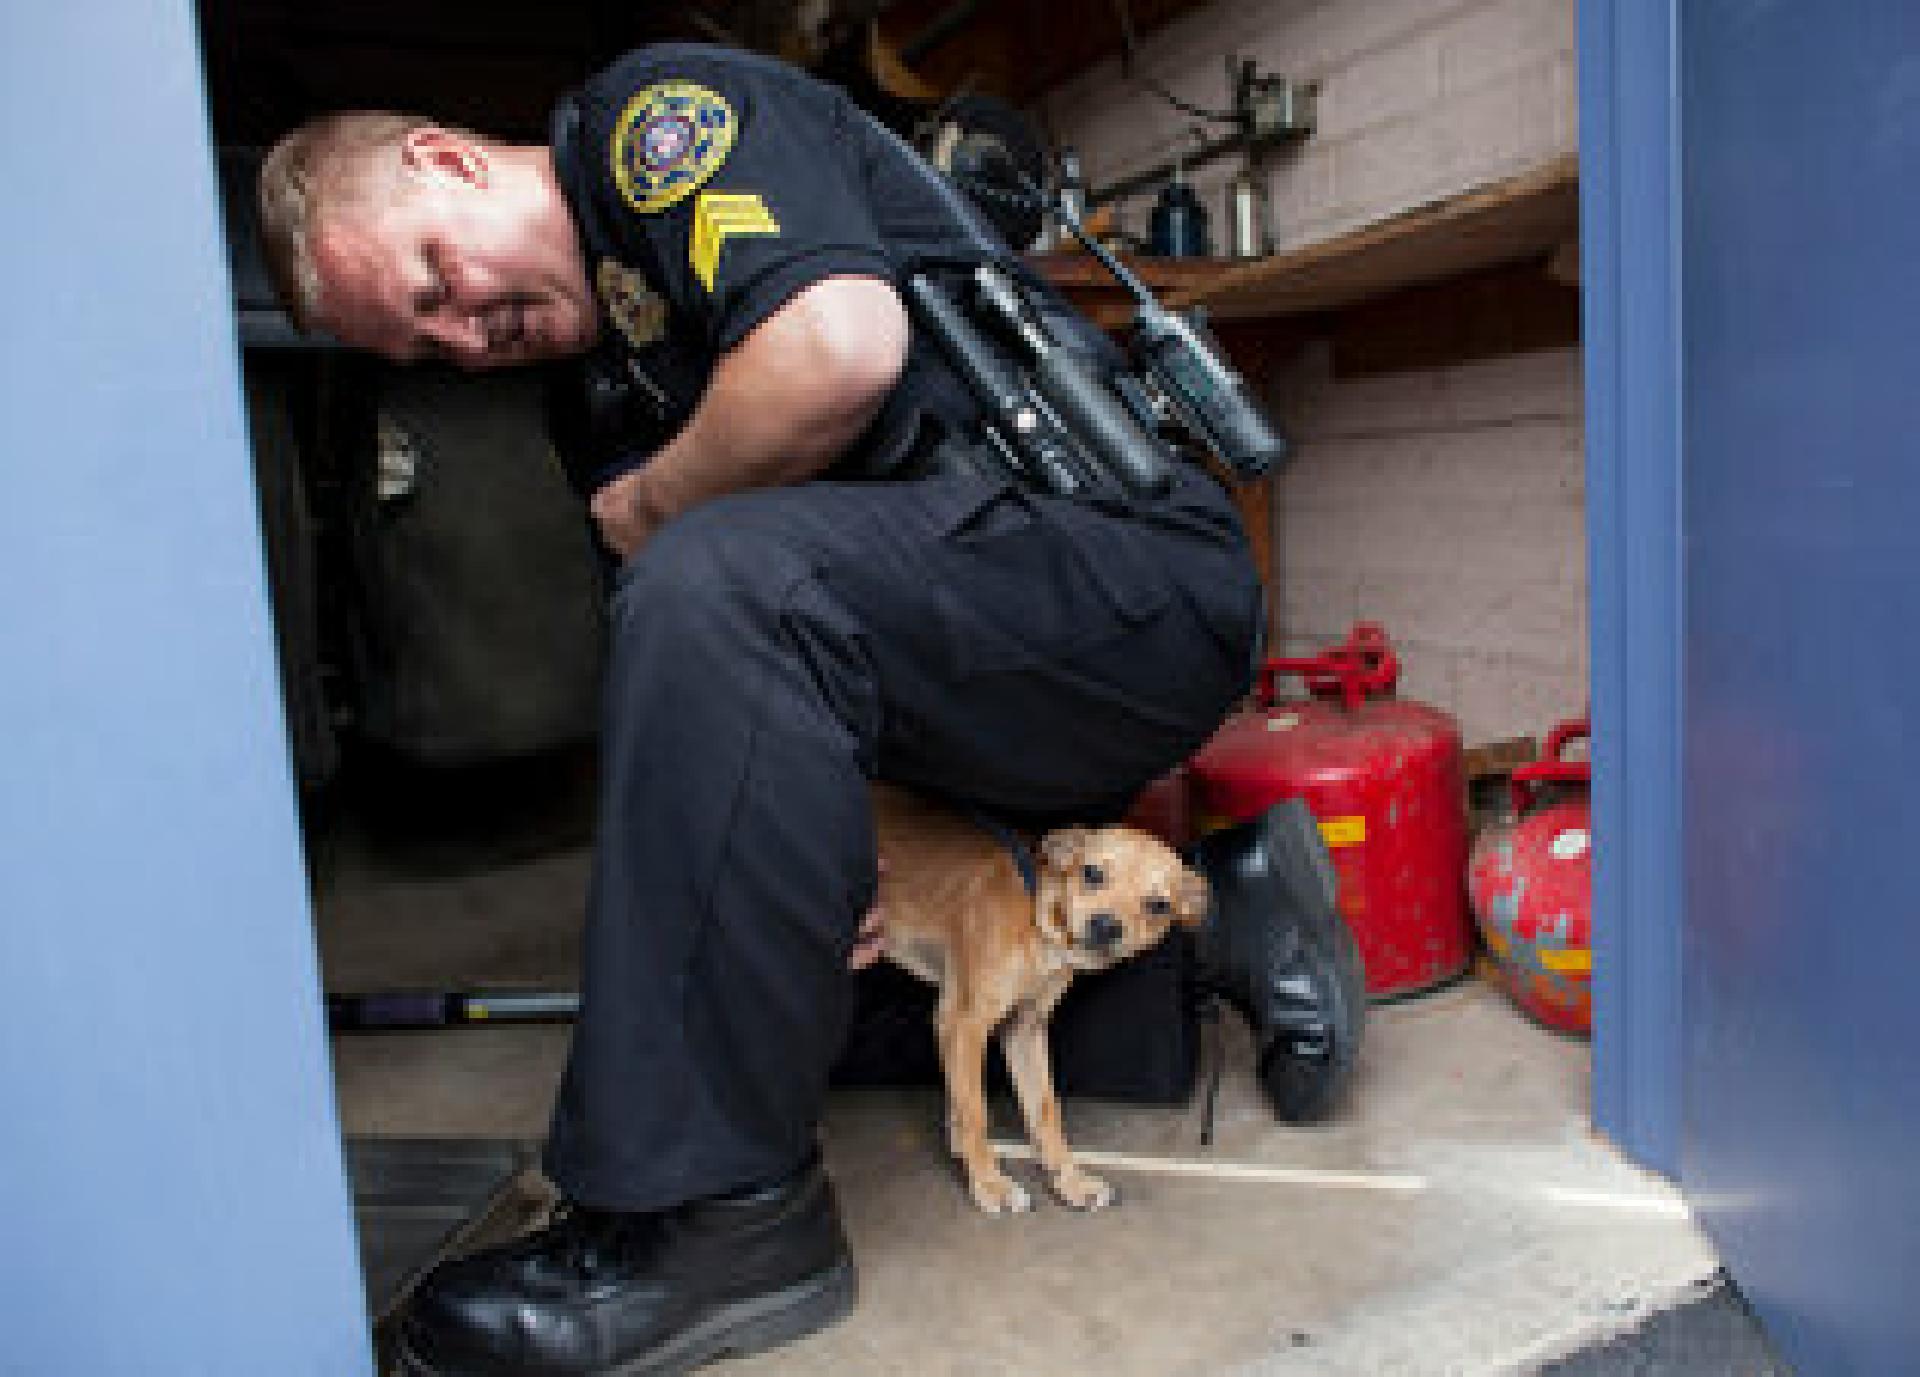 Sgt. True läßt einen streunenden Chihuahua-Mix aus einem Heizungsraum